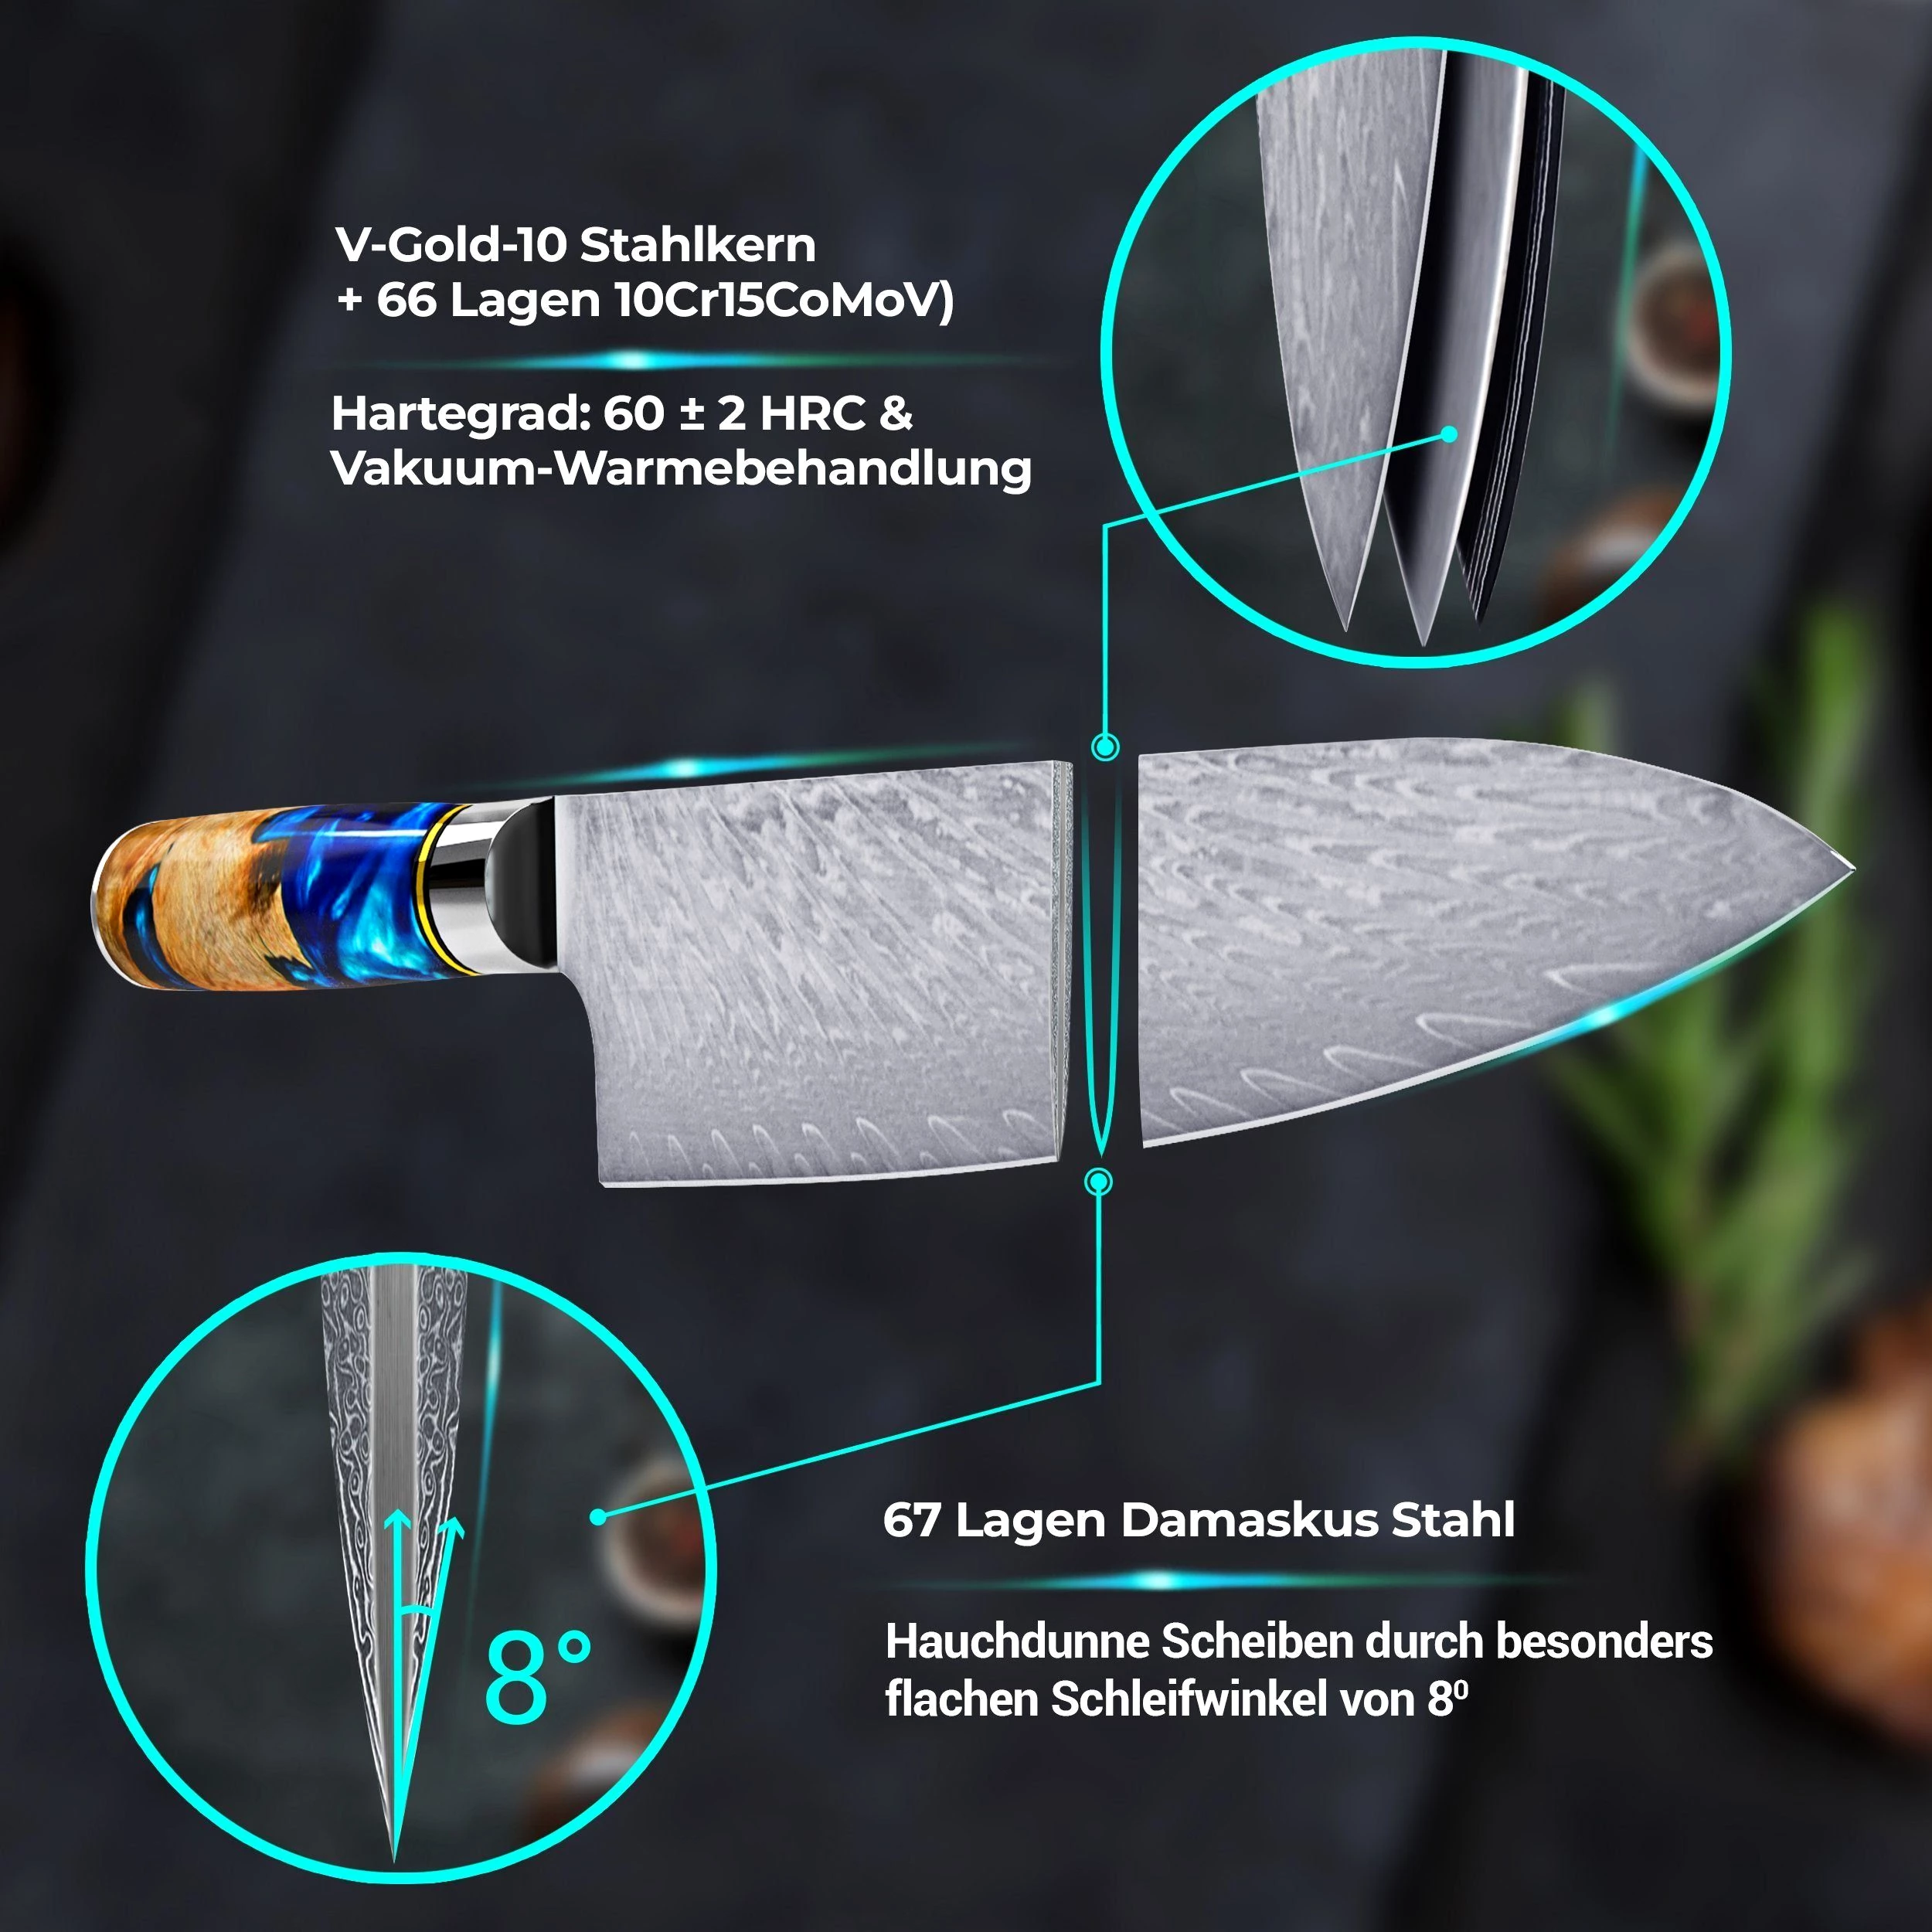 Calisso Messer-Set Aquamarine Line Küchenmesser Damastmesser Messerset , Damastmesser